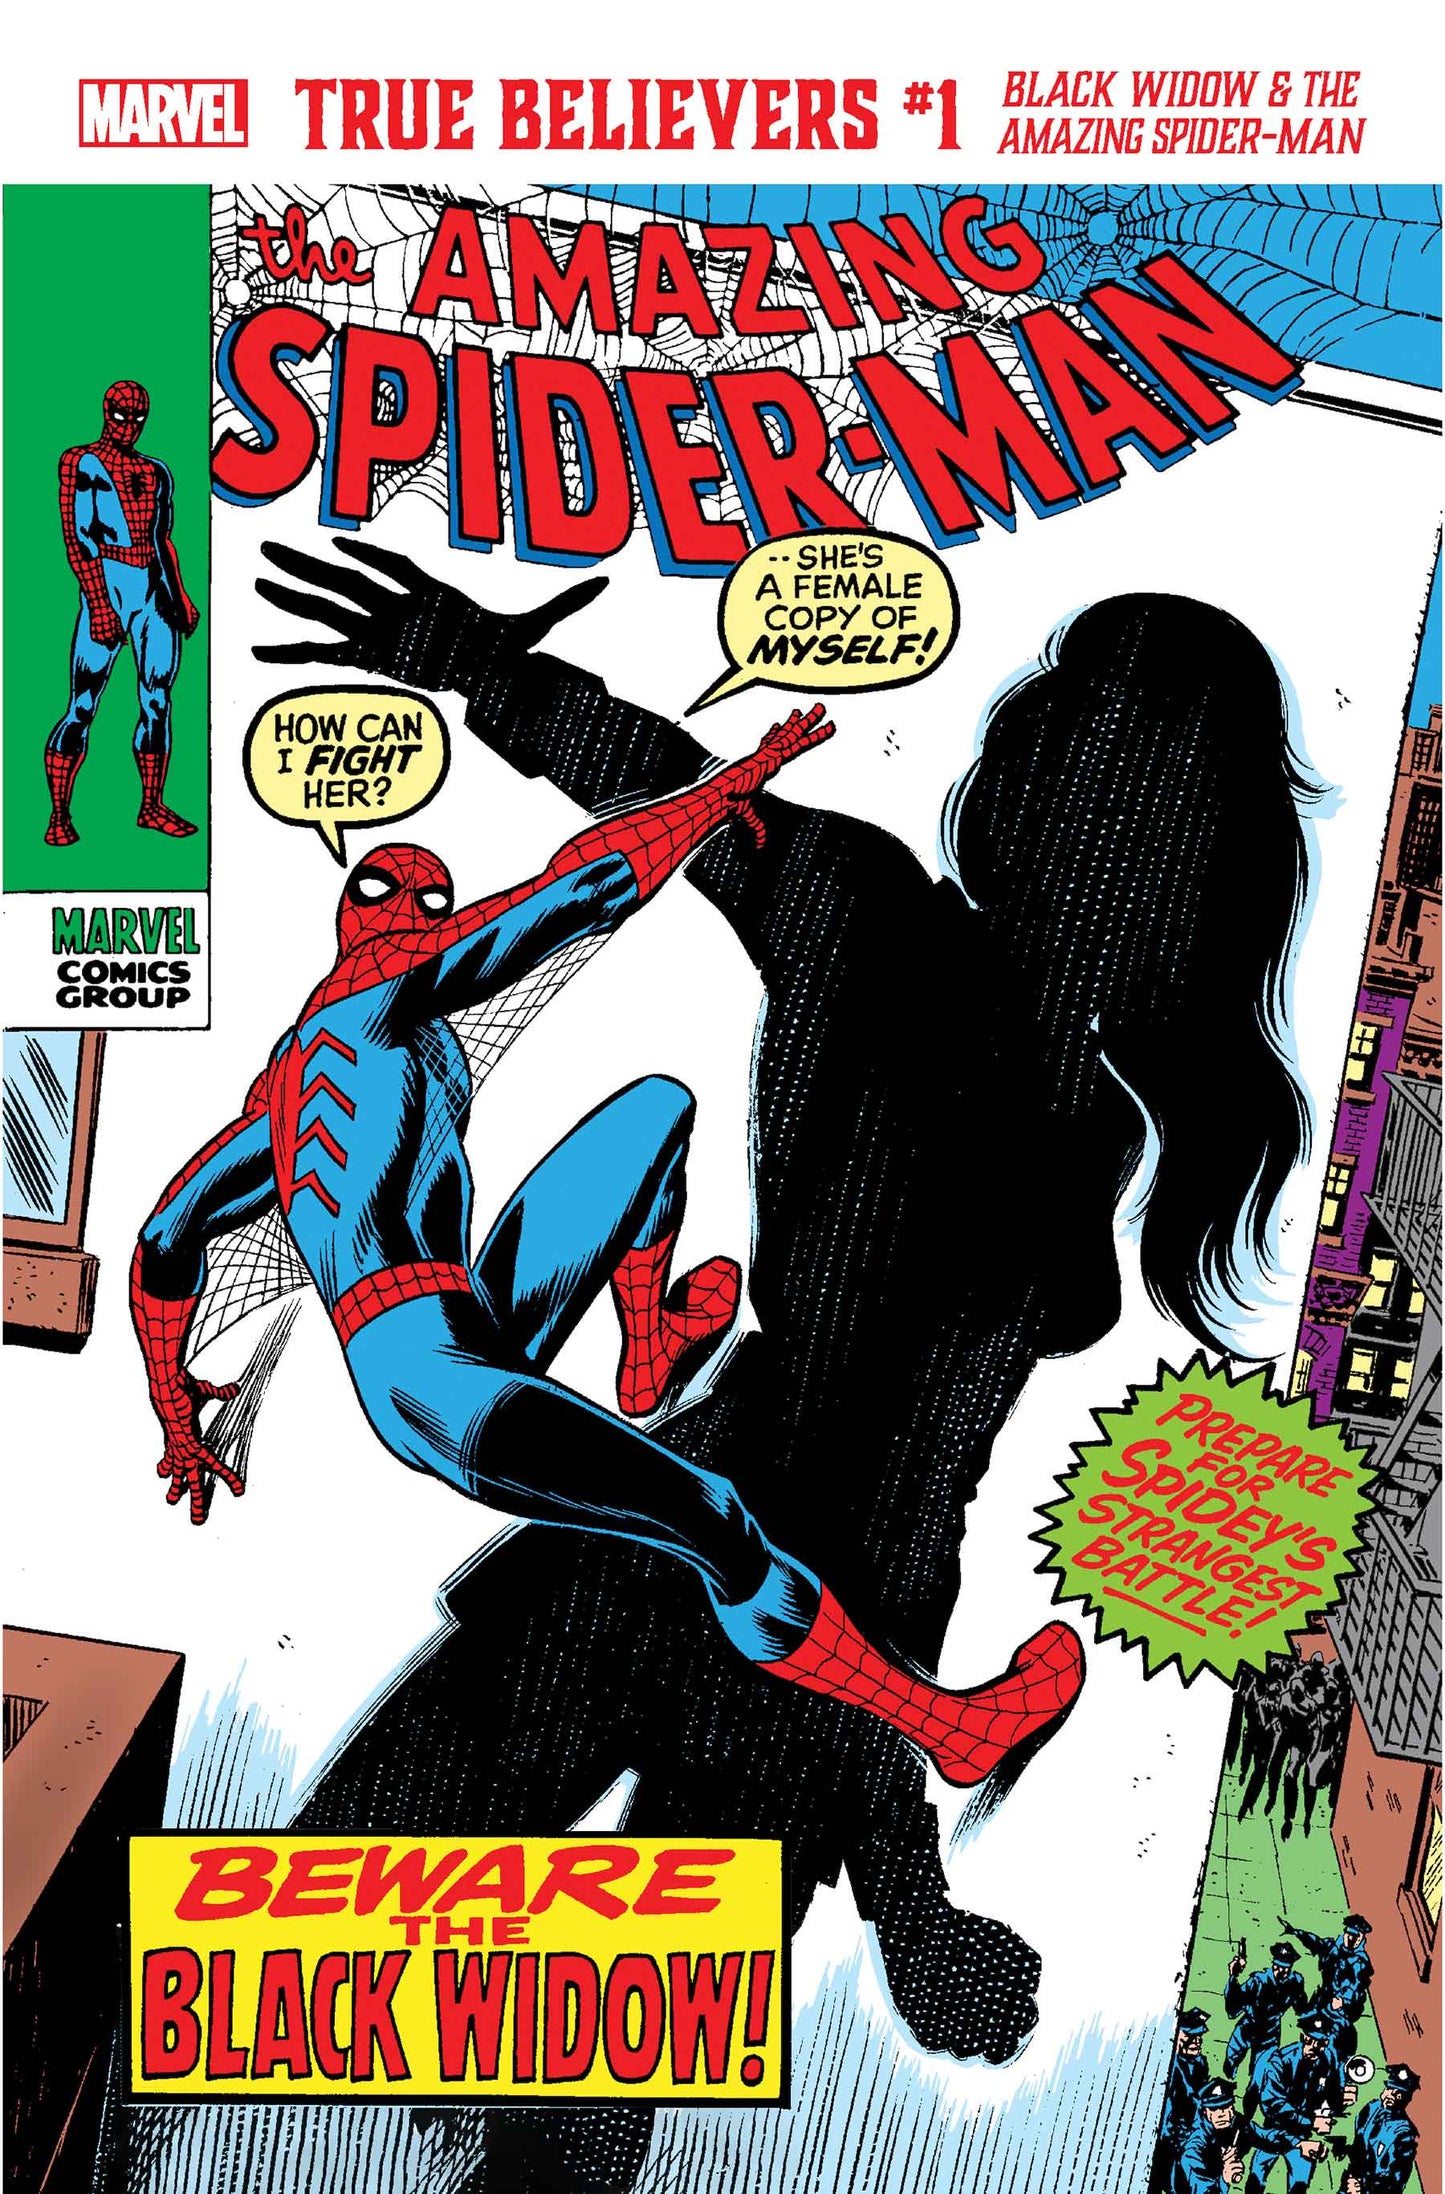 True Believers #1 Black Widow & The Amazing Spider-Man